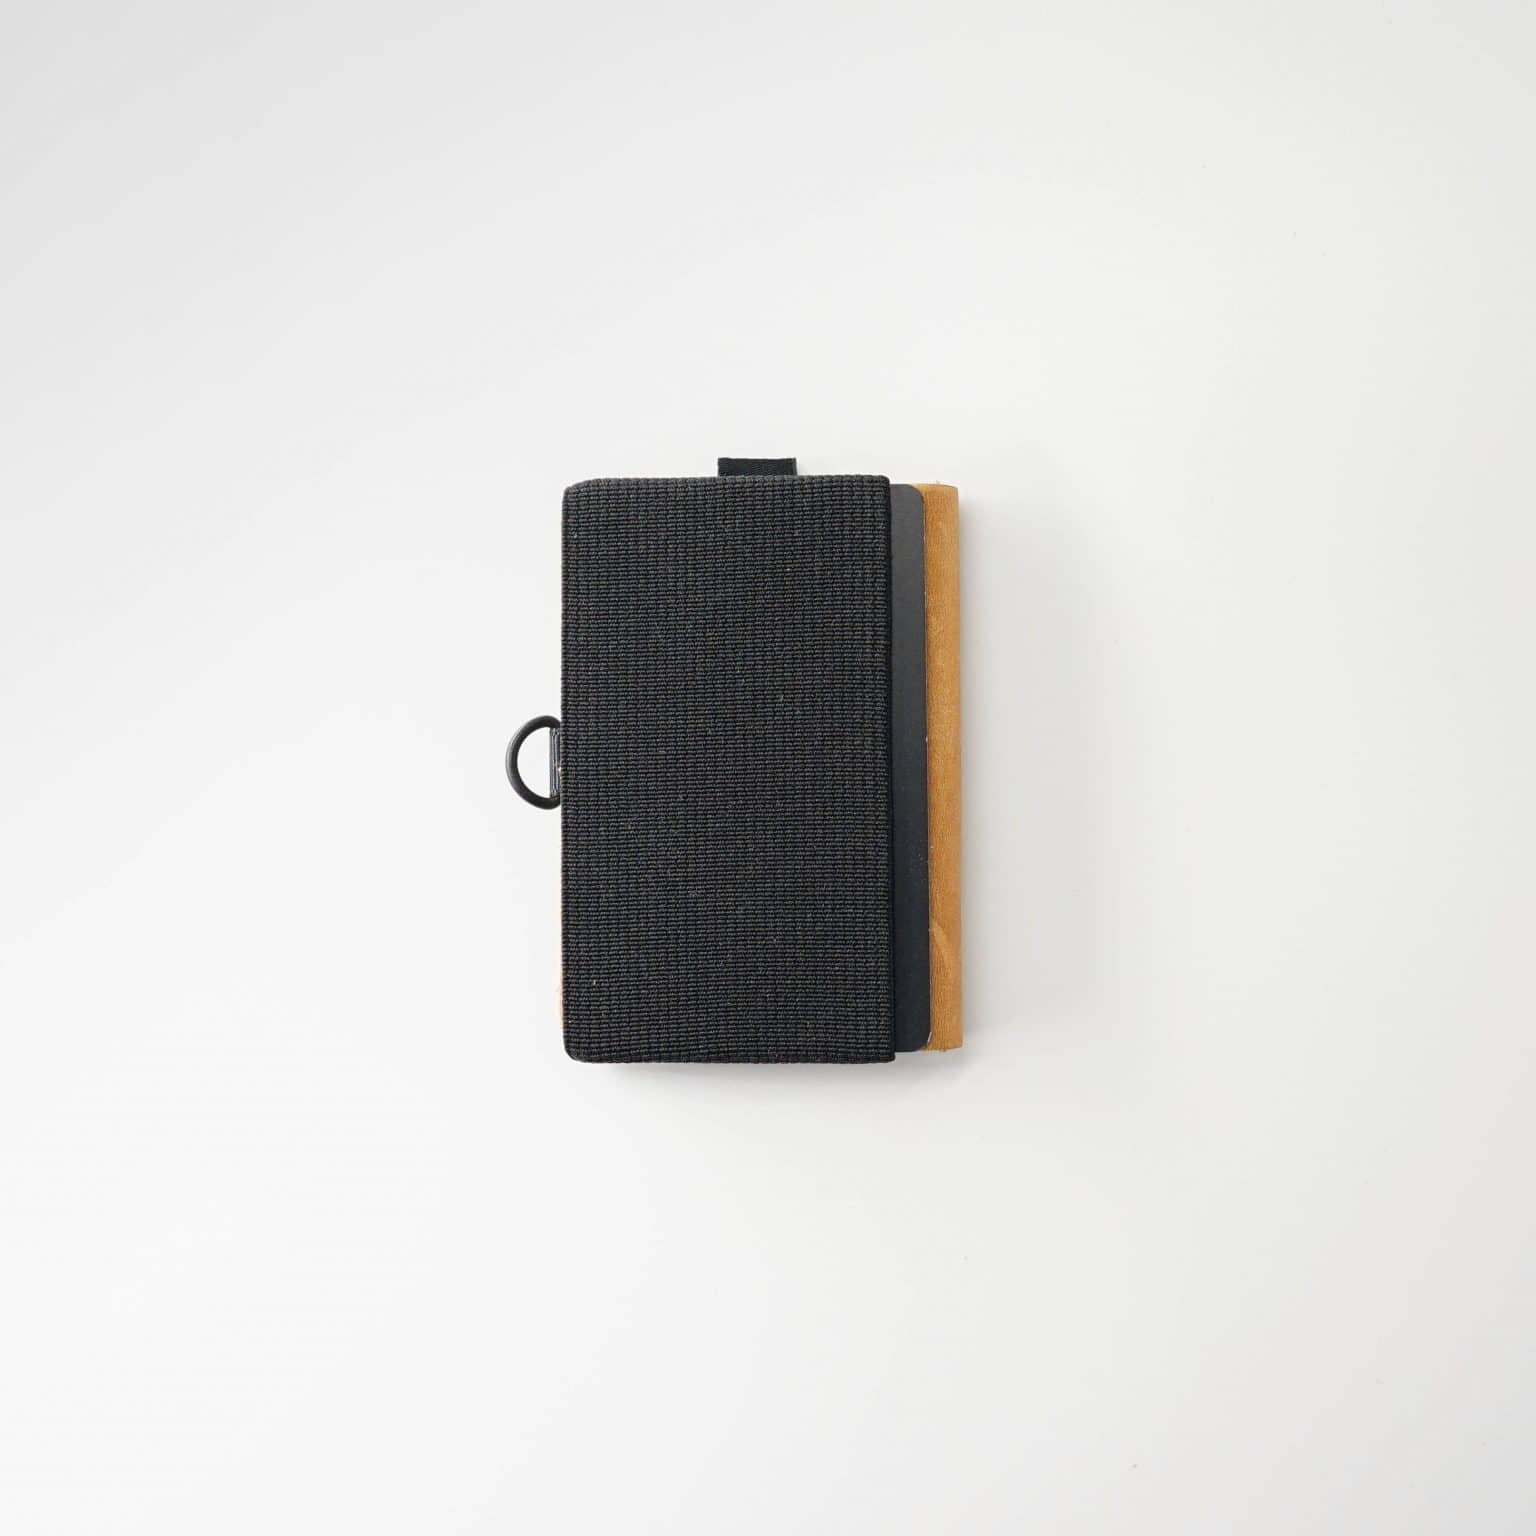 Slimline wallet with minimalist interior layout